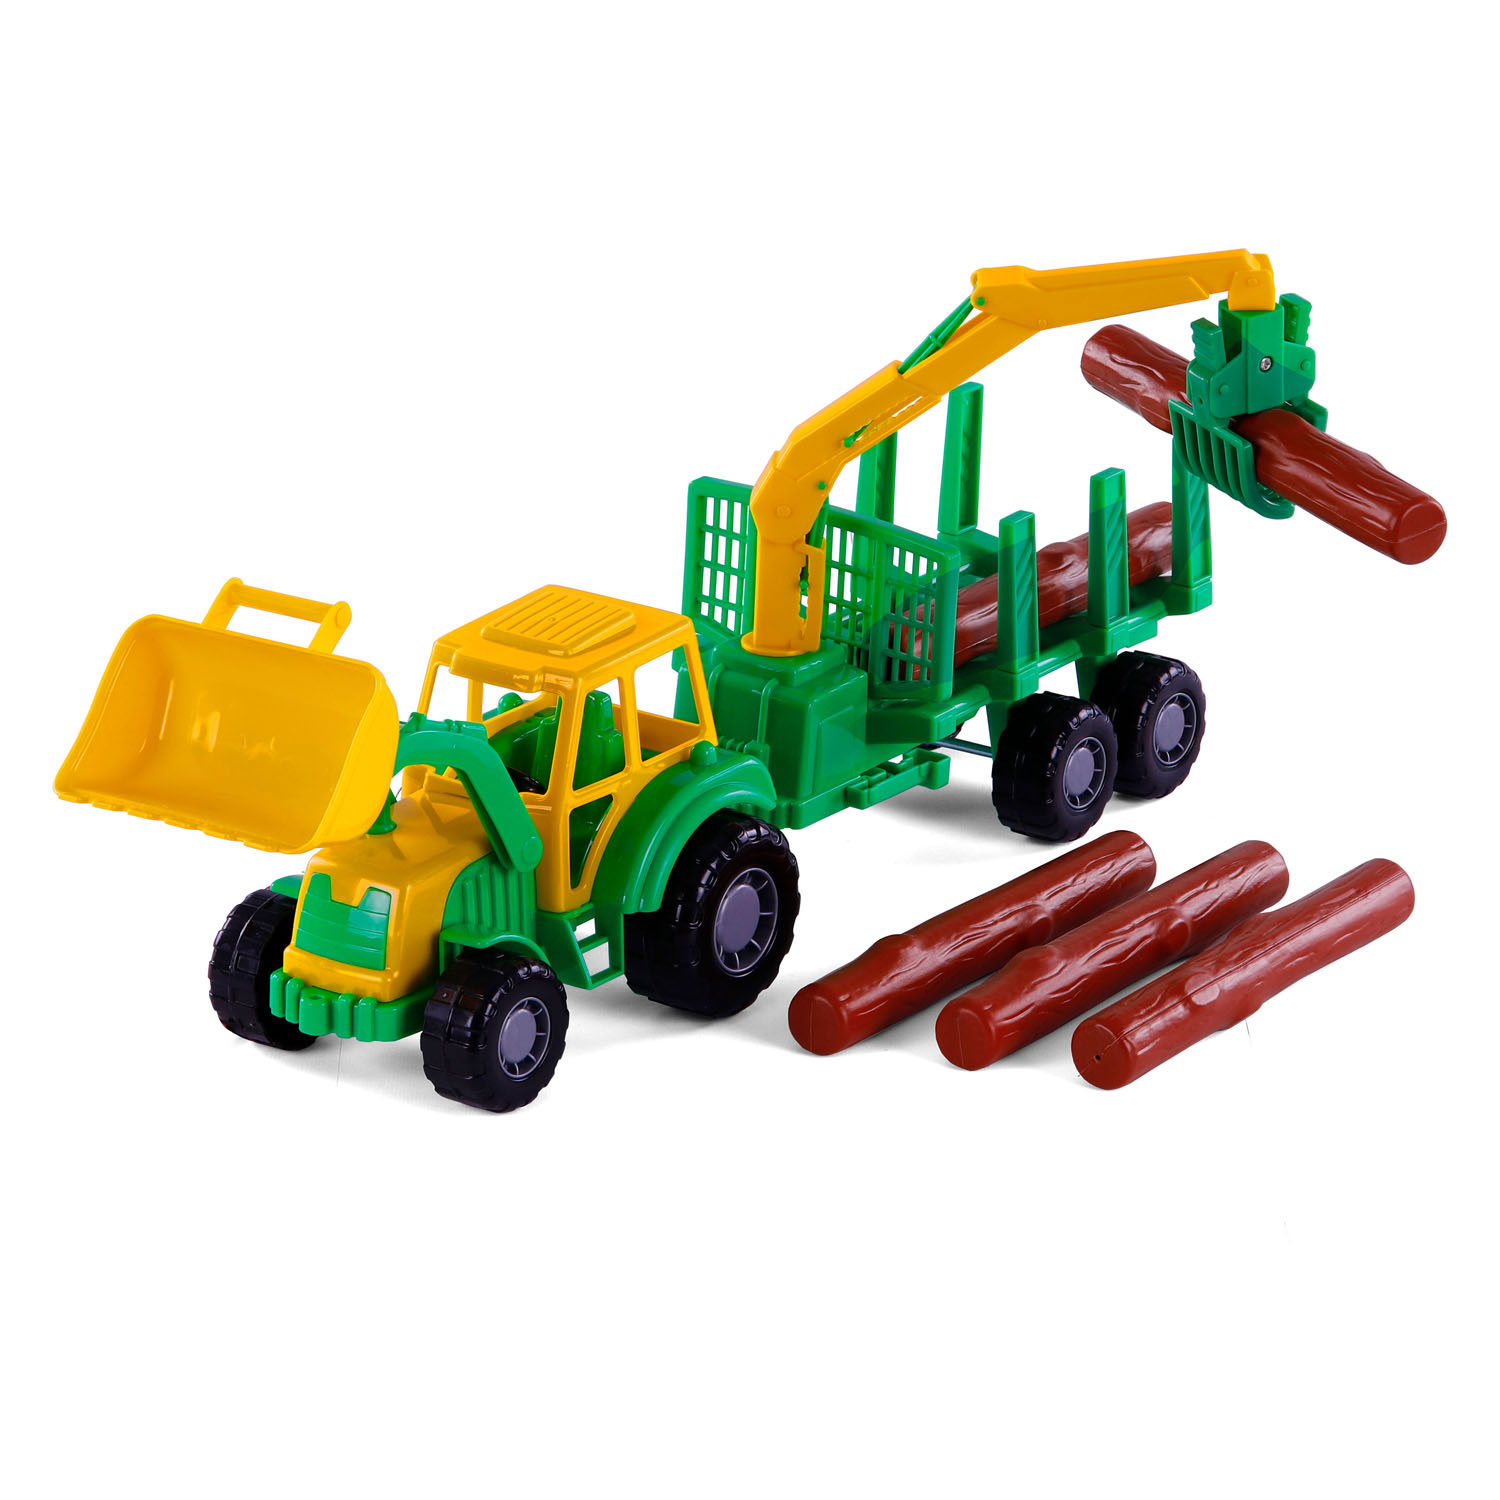 Tracteur Cavallino Junior avec remorque grue et bois, 46 cm